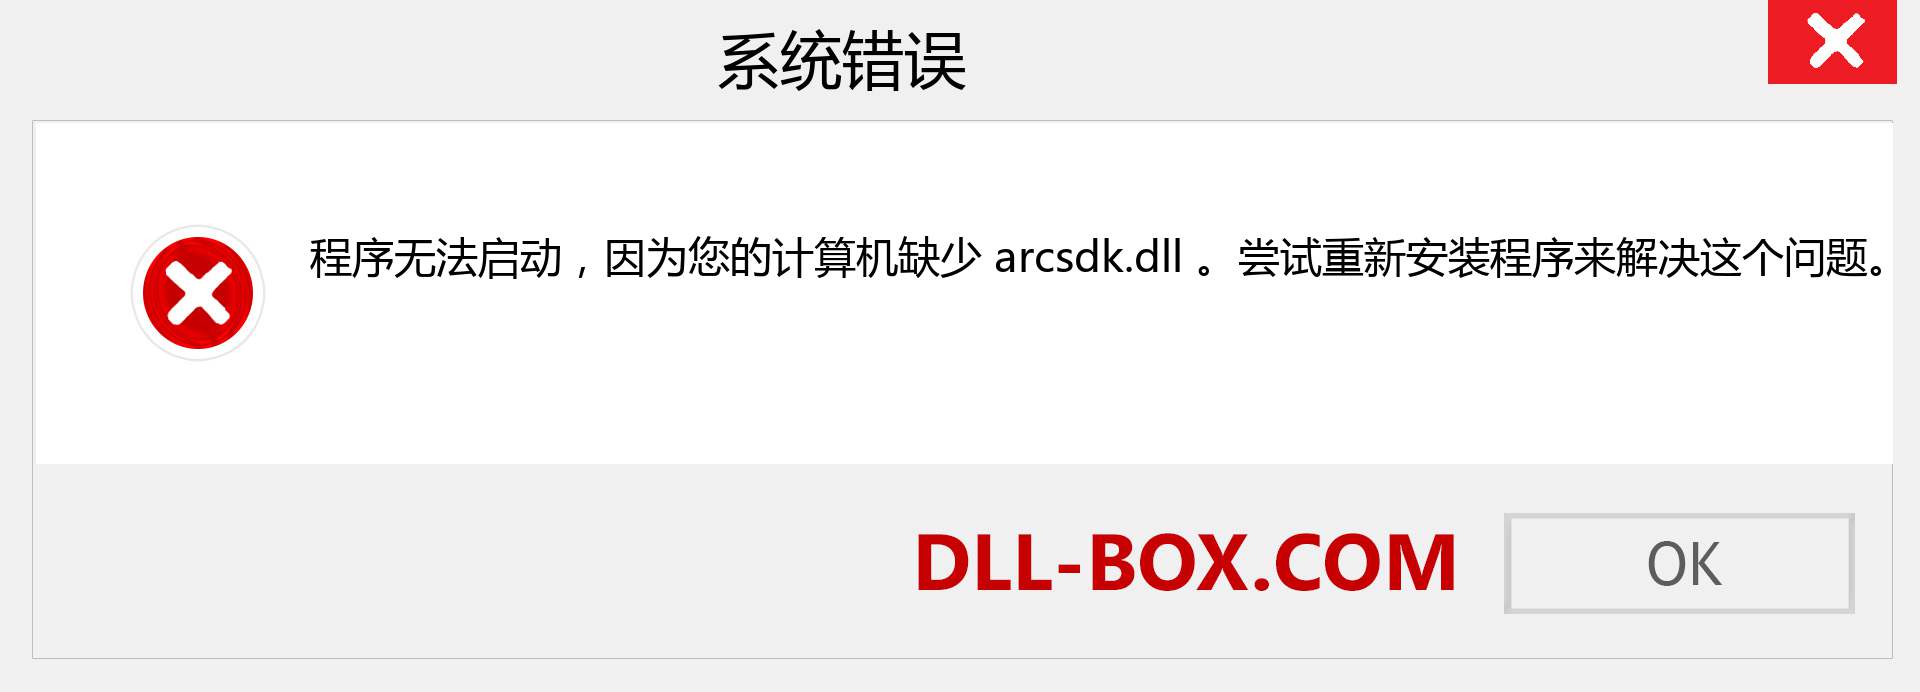 arcsdk.dll 文件丢失？。 适用于 Windows 7、8、10 的下载 - 修复 Windows、照片、图像上的 arcsdk dll 丢失错误